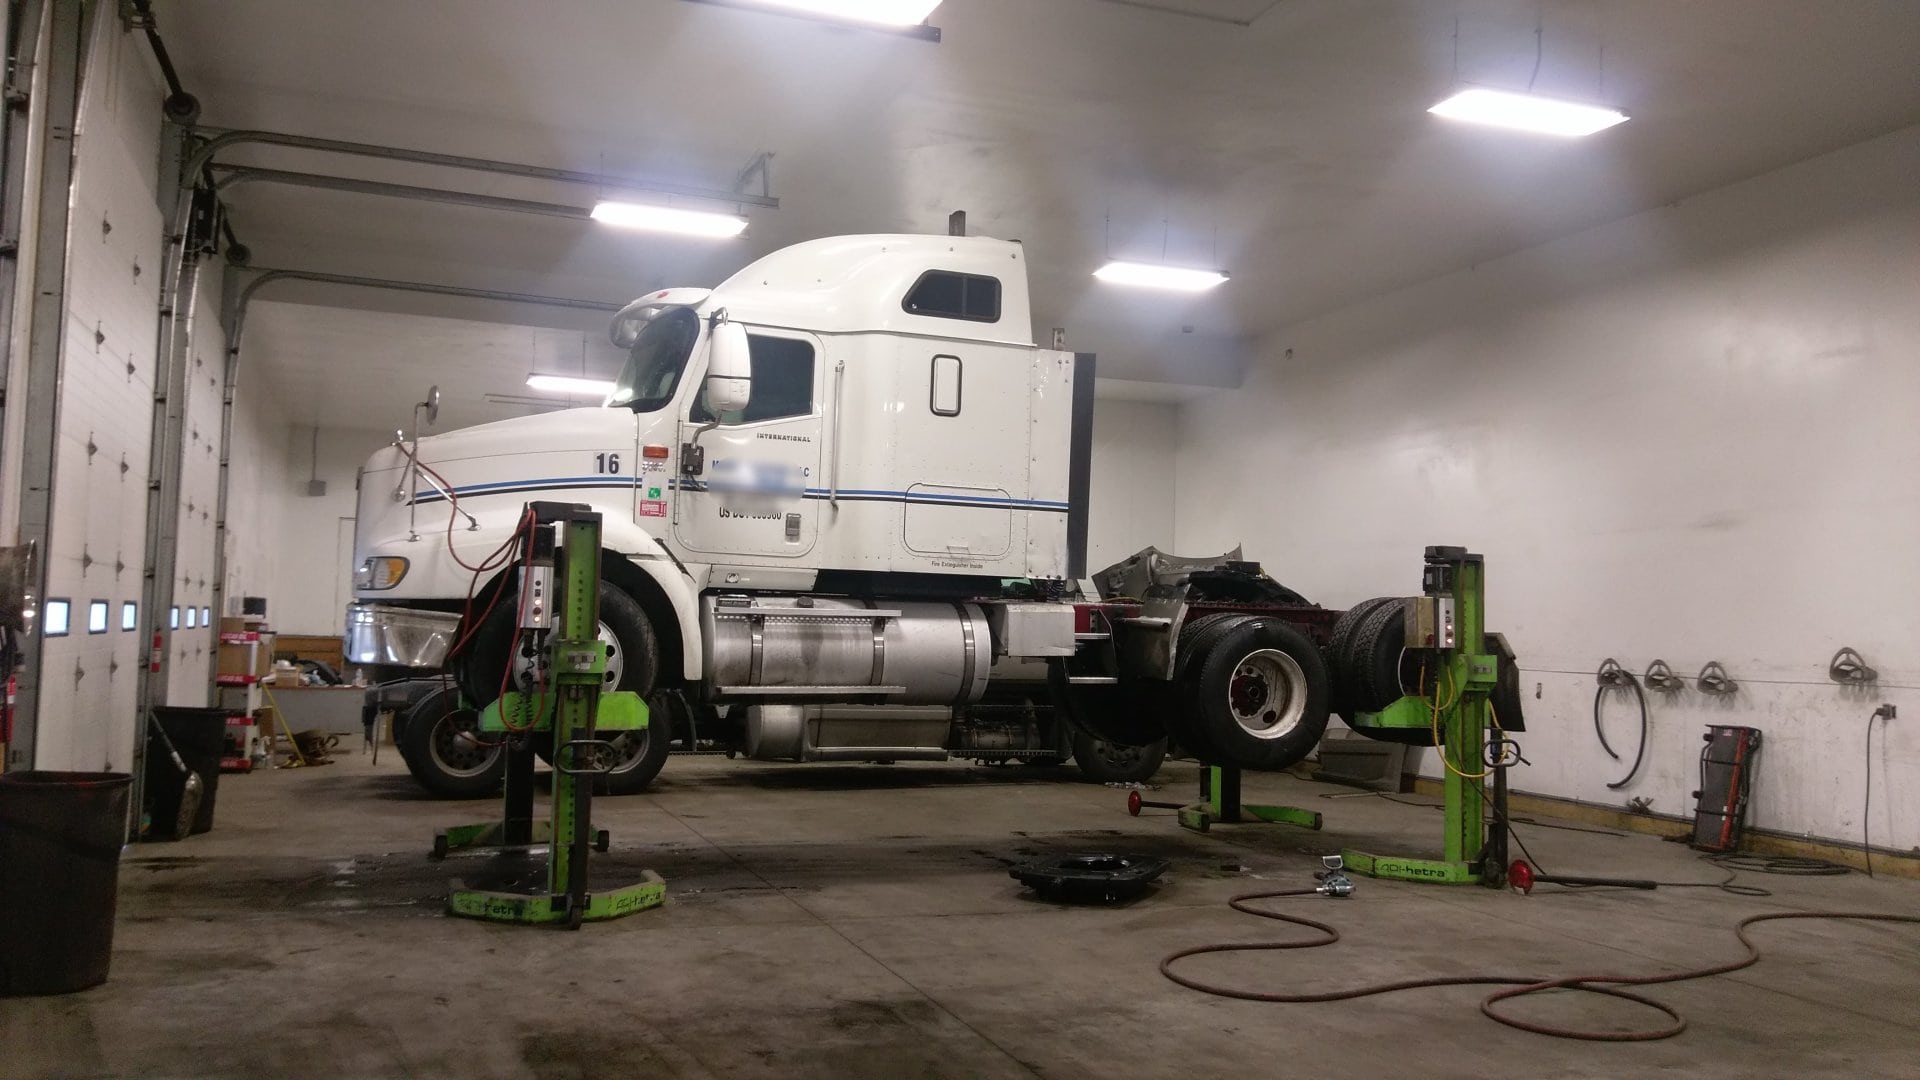 USA Repair Shop - New Castle, DE, US, truck repair service